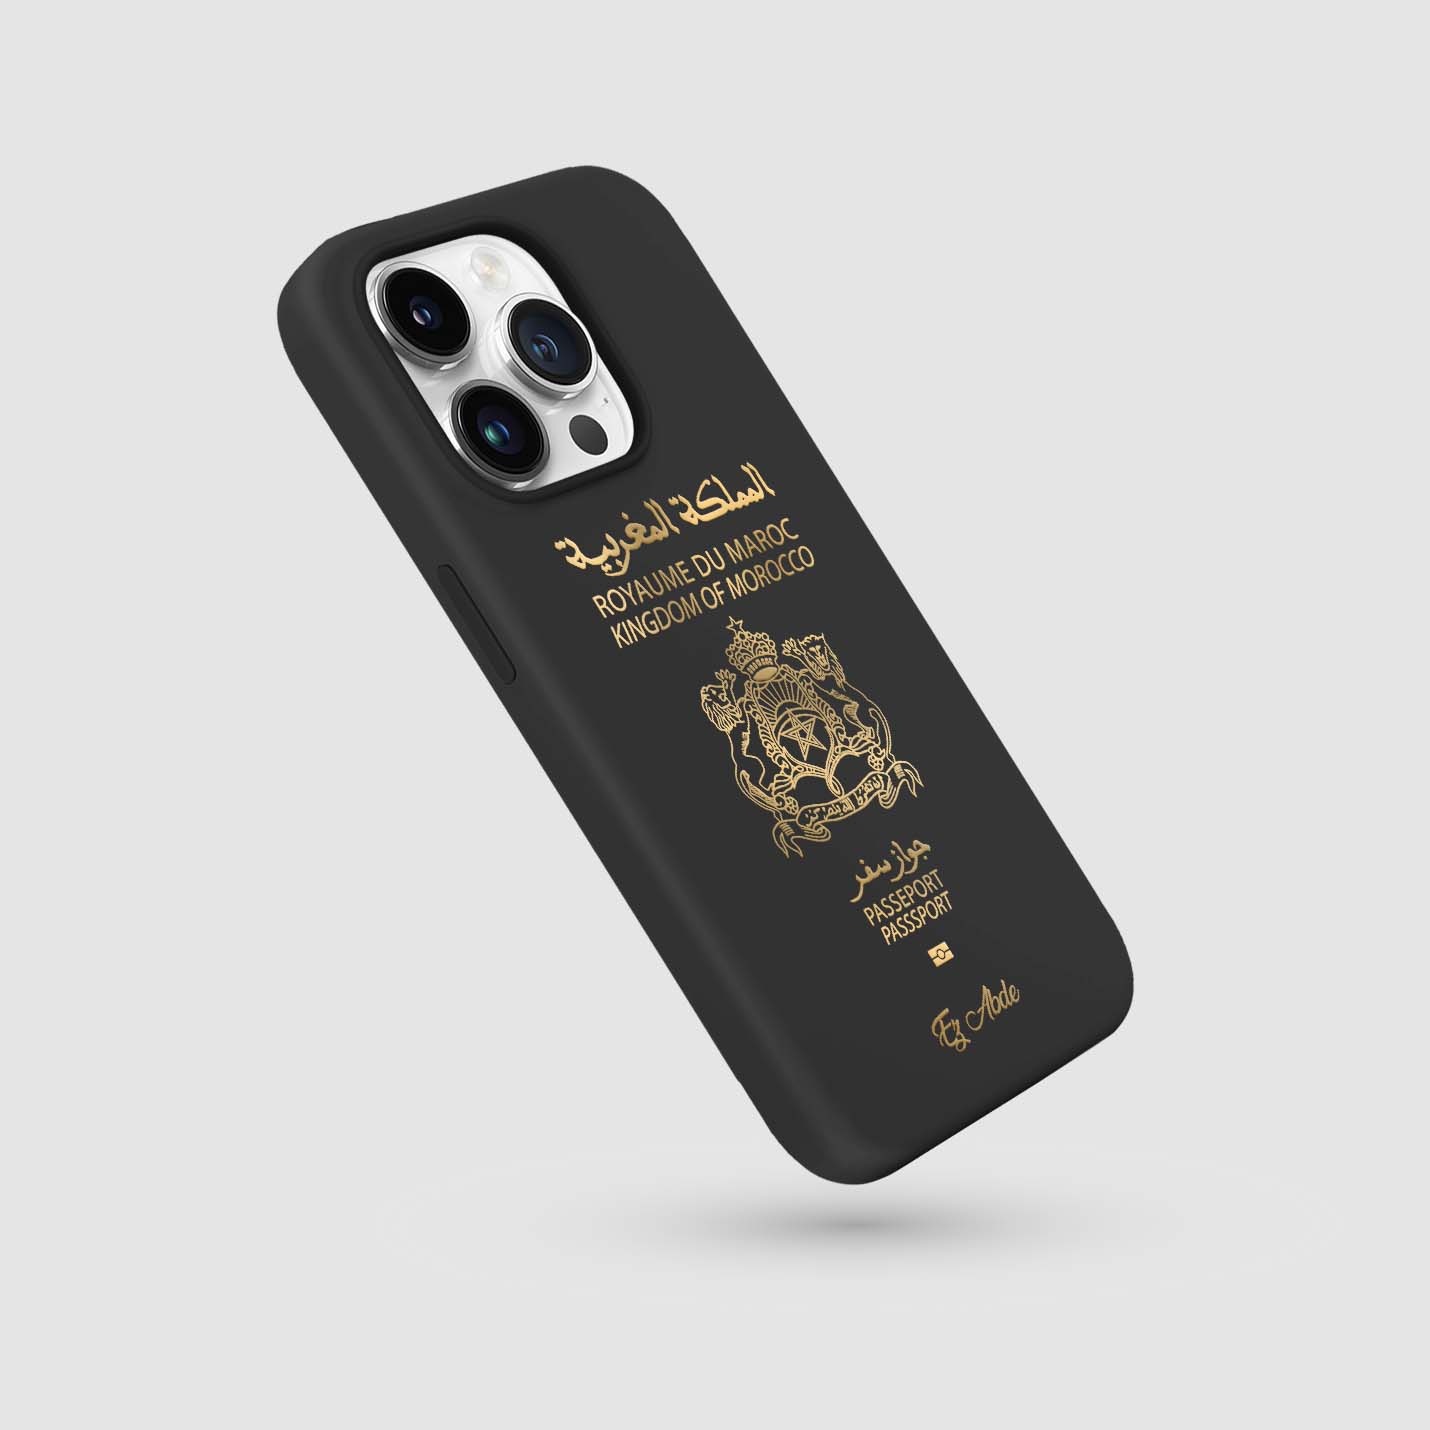 Handyhüllen mit Reisepass - Marokko - 1instaphone